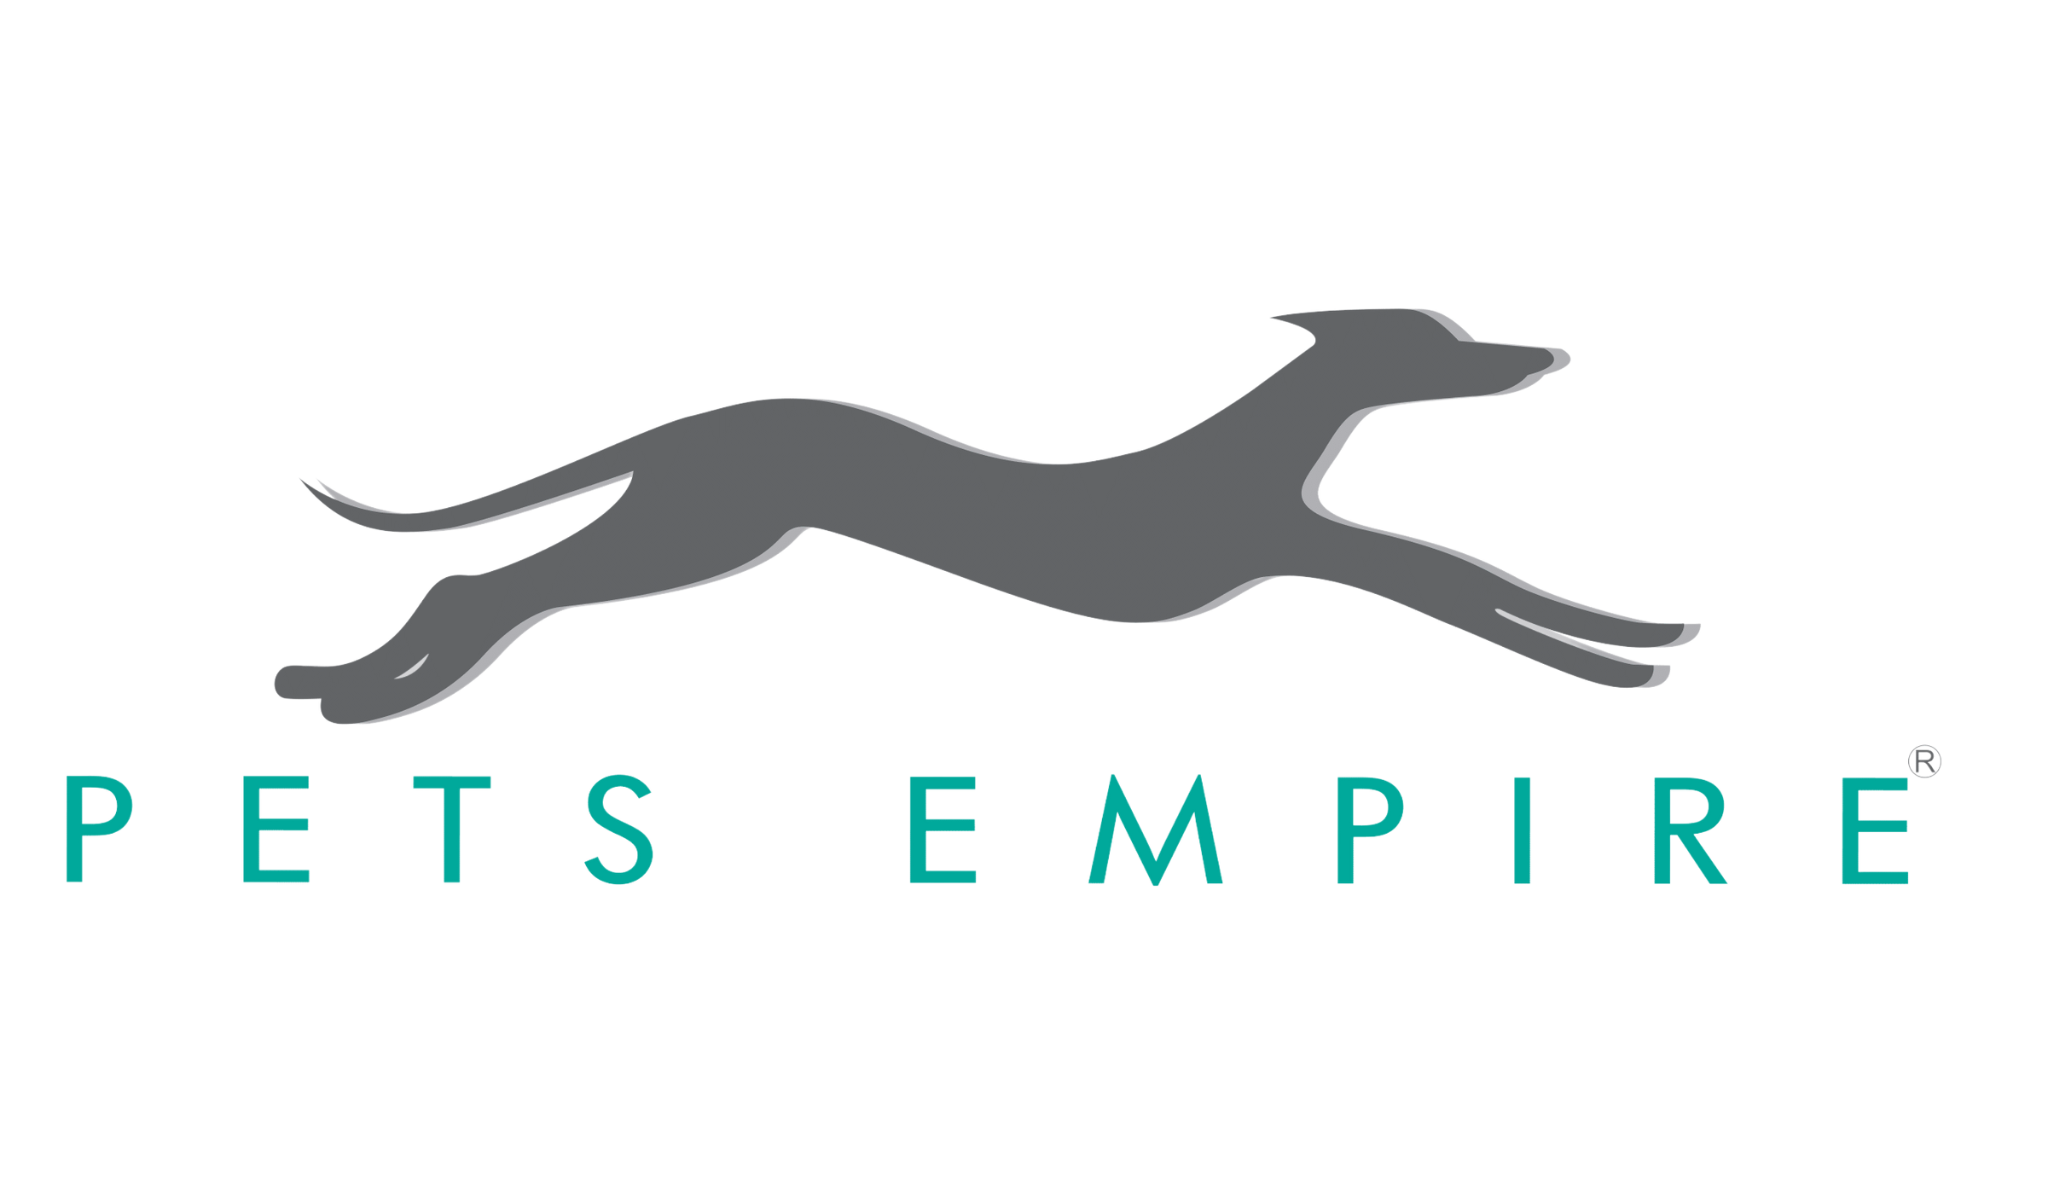 Pets Empire Brand Logo Pet for Dog Bowl